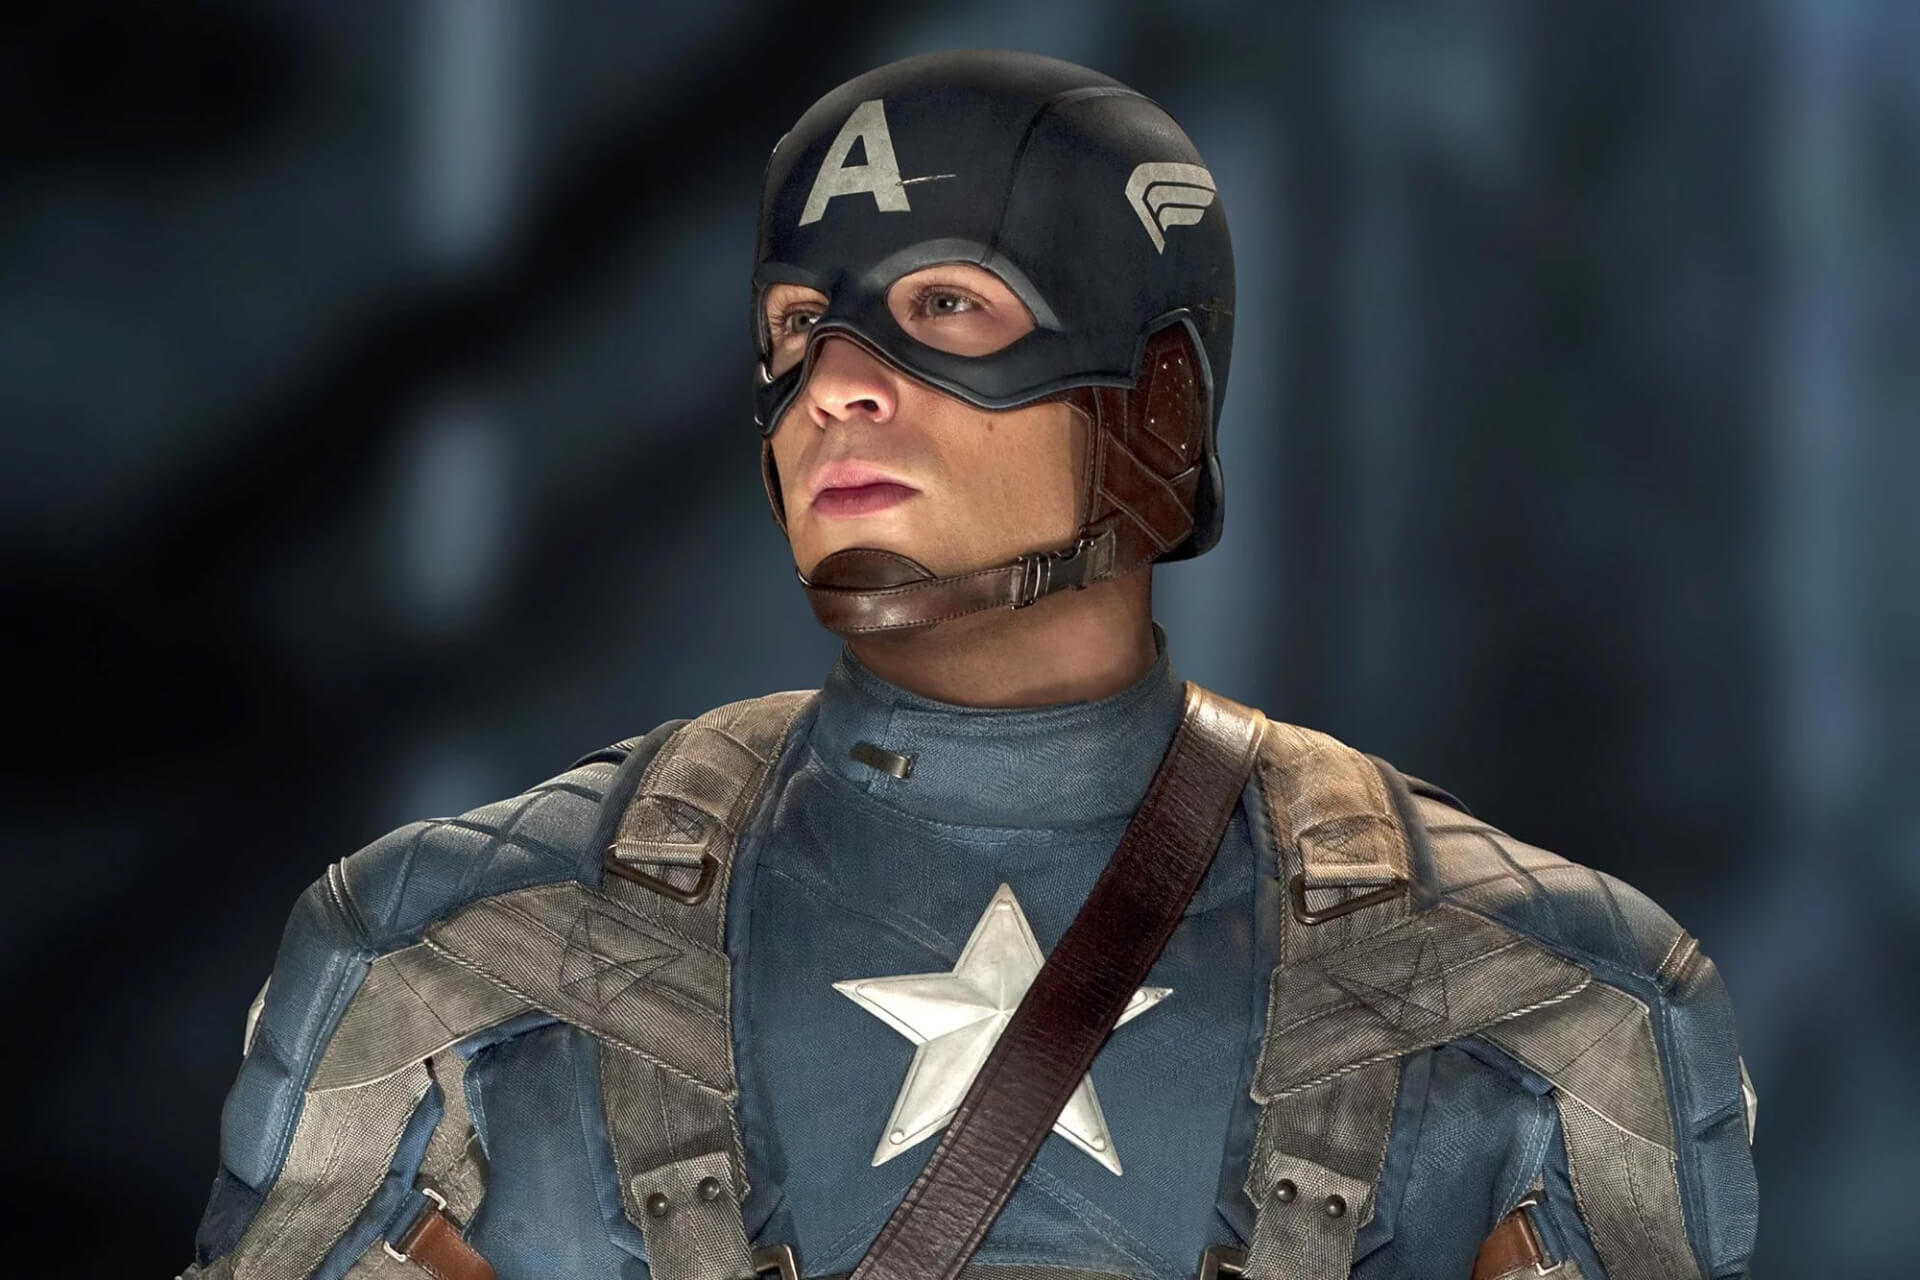 FEJTÁGÍTÓ: A Marvel elárulta, nem Amerika Kapitány volt az első Bosszúálló, de akkor ki?